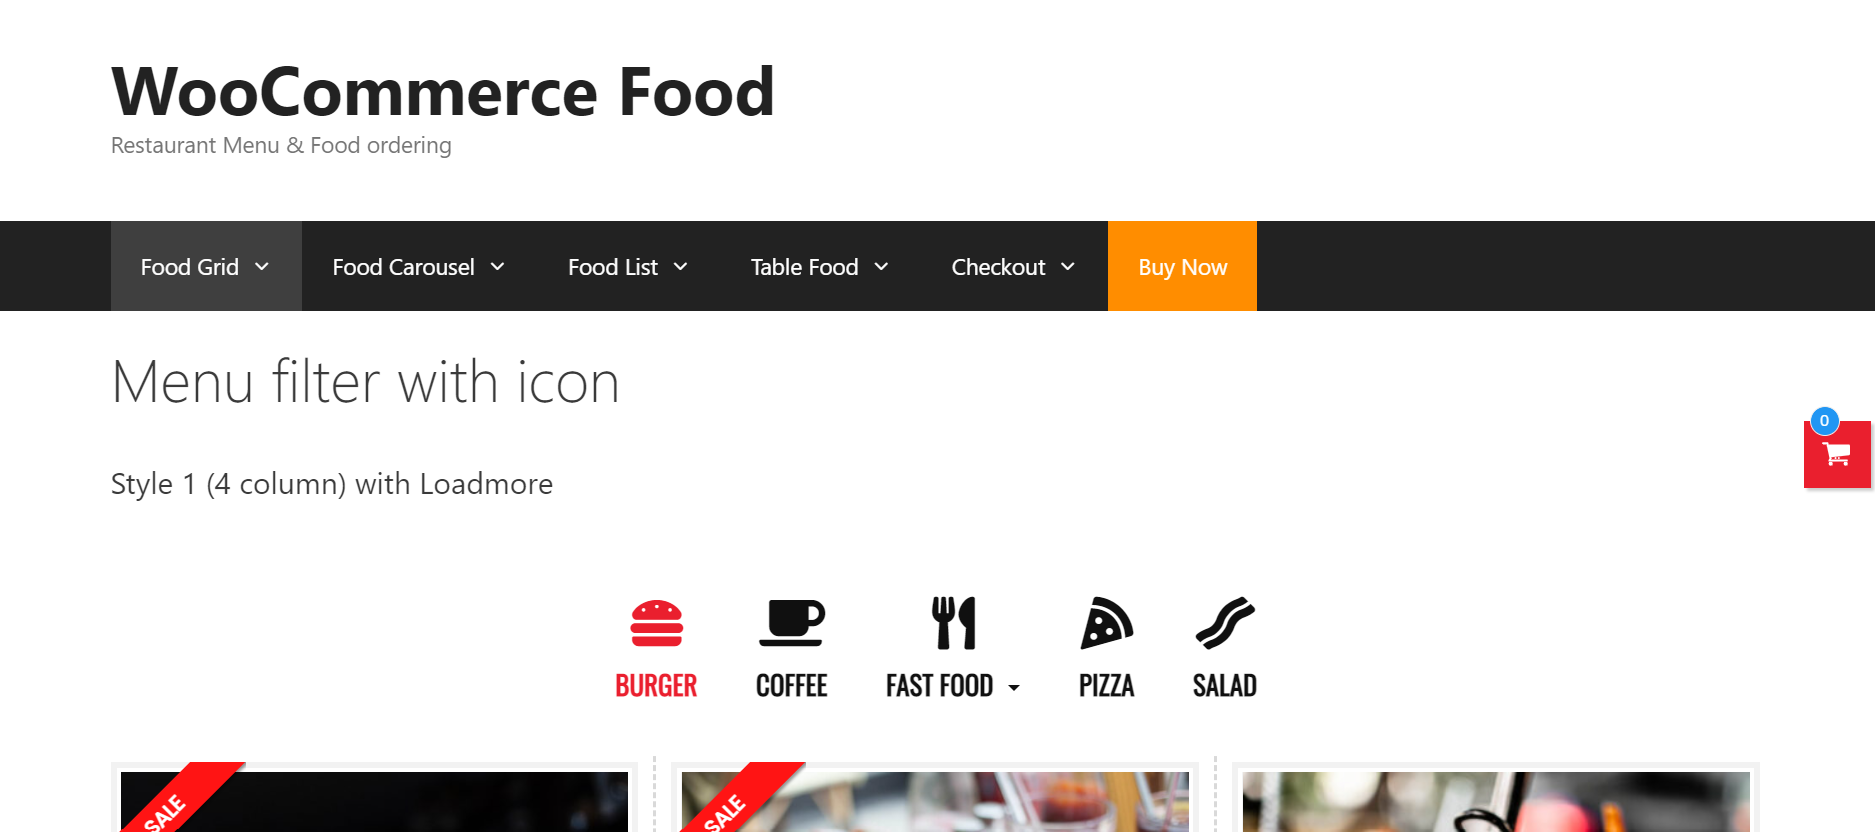 WooCommerce Food  плагин меню для ресторана и заказ еды